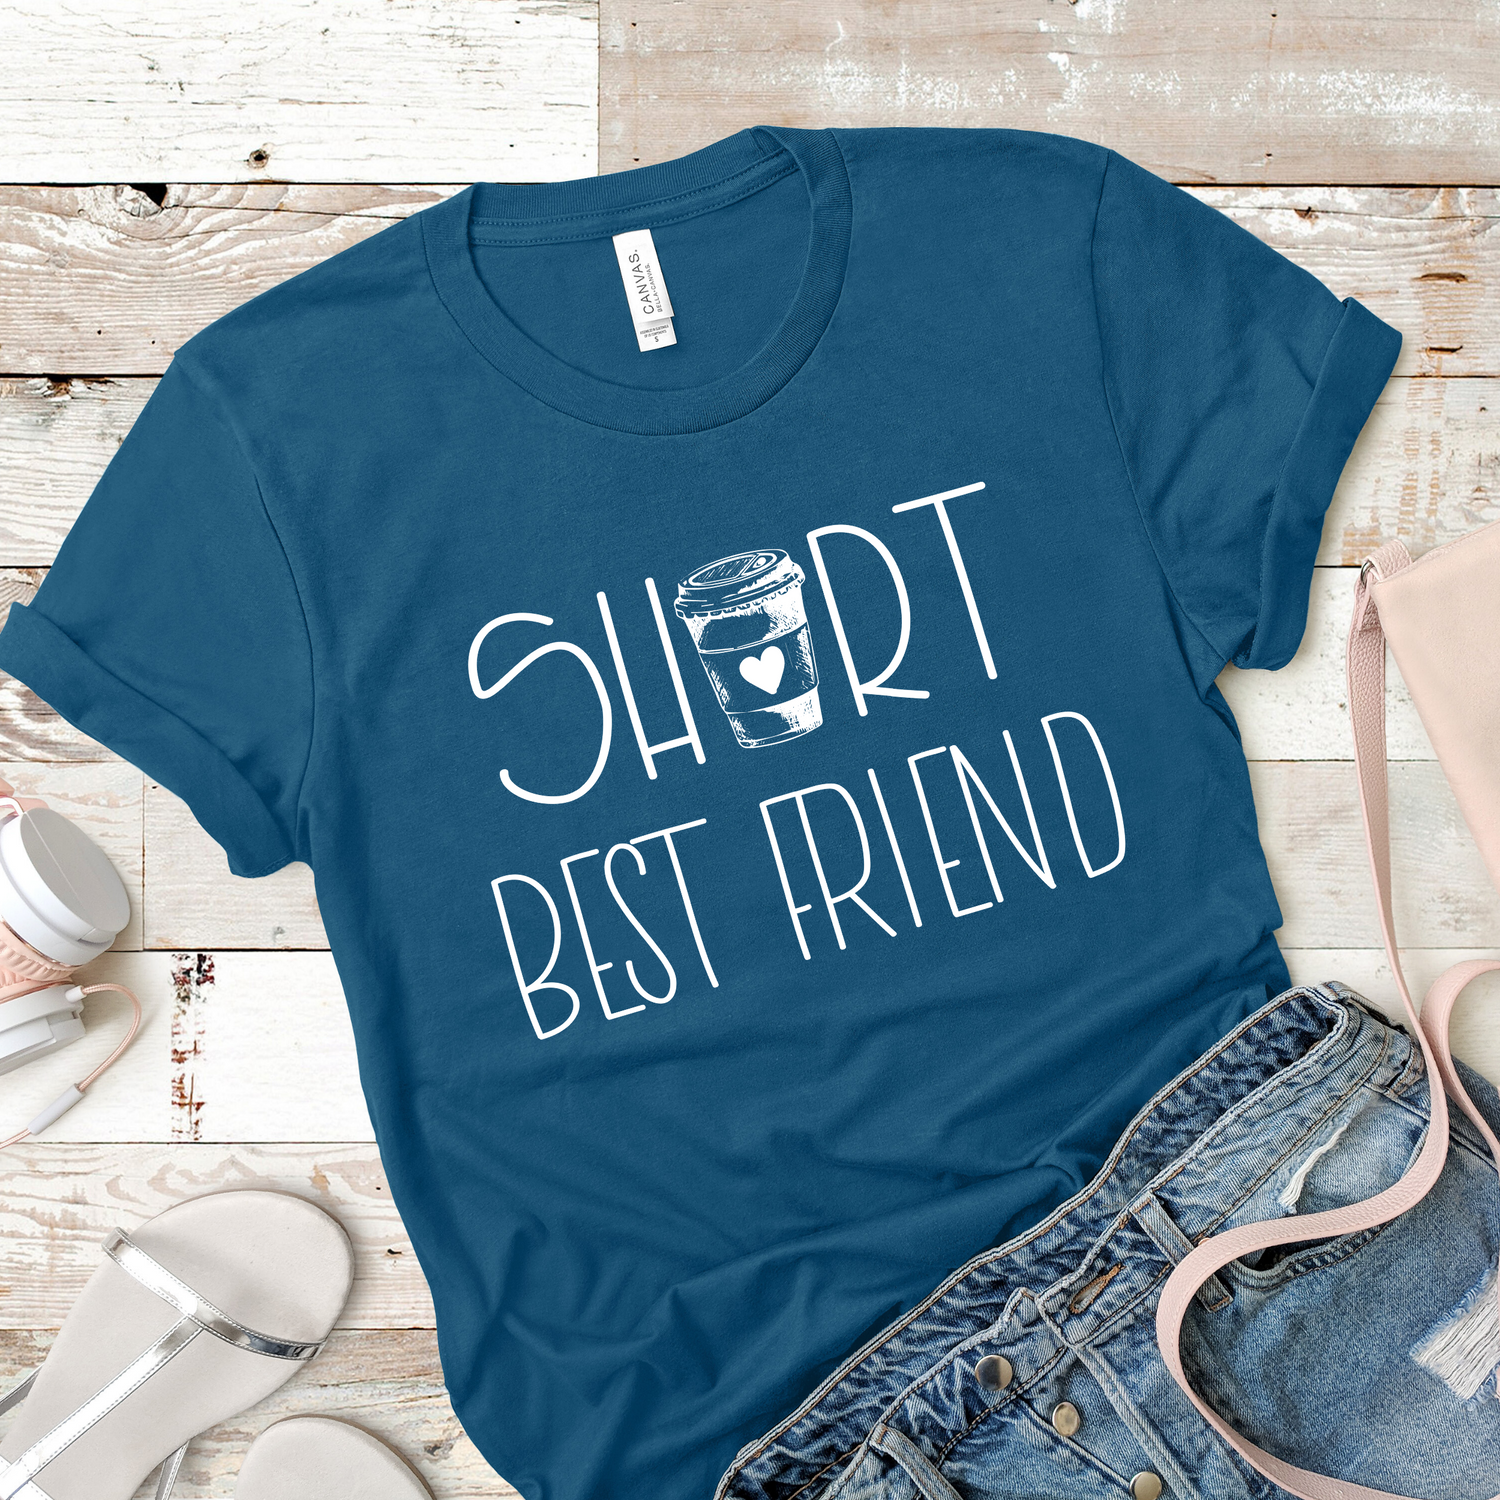 Short Bestfriend Matching Best Friend Shirt - Teegarb